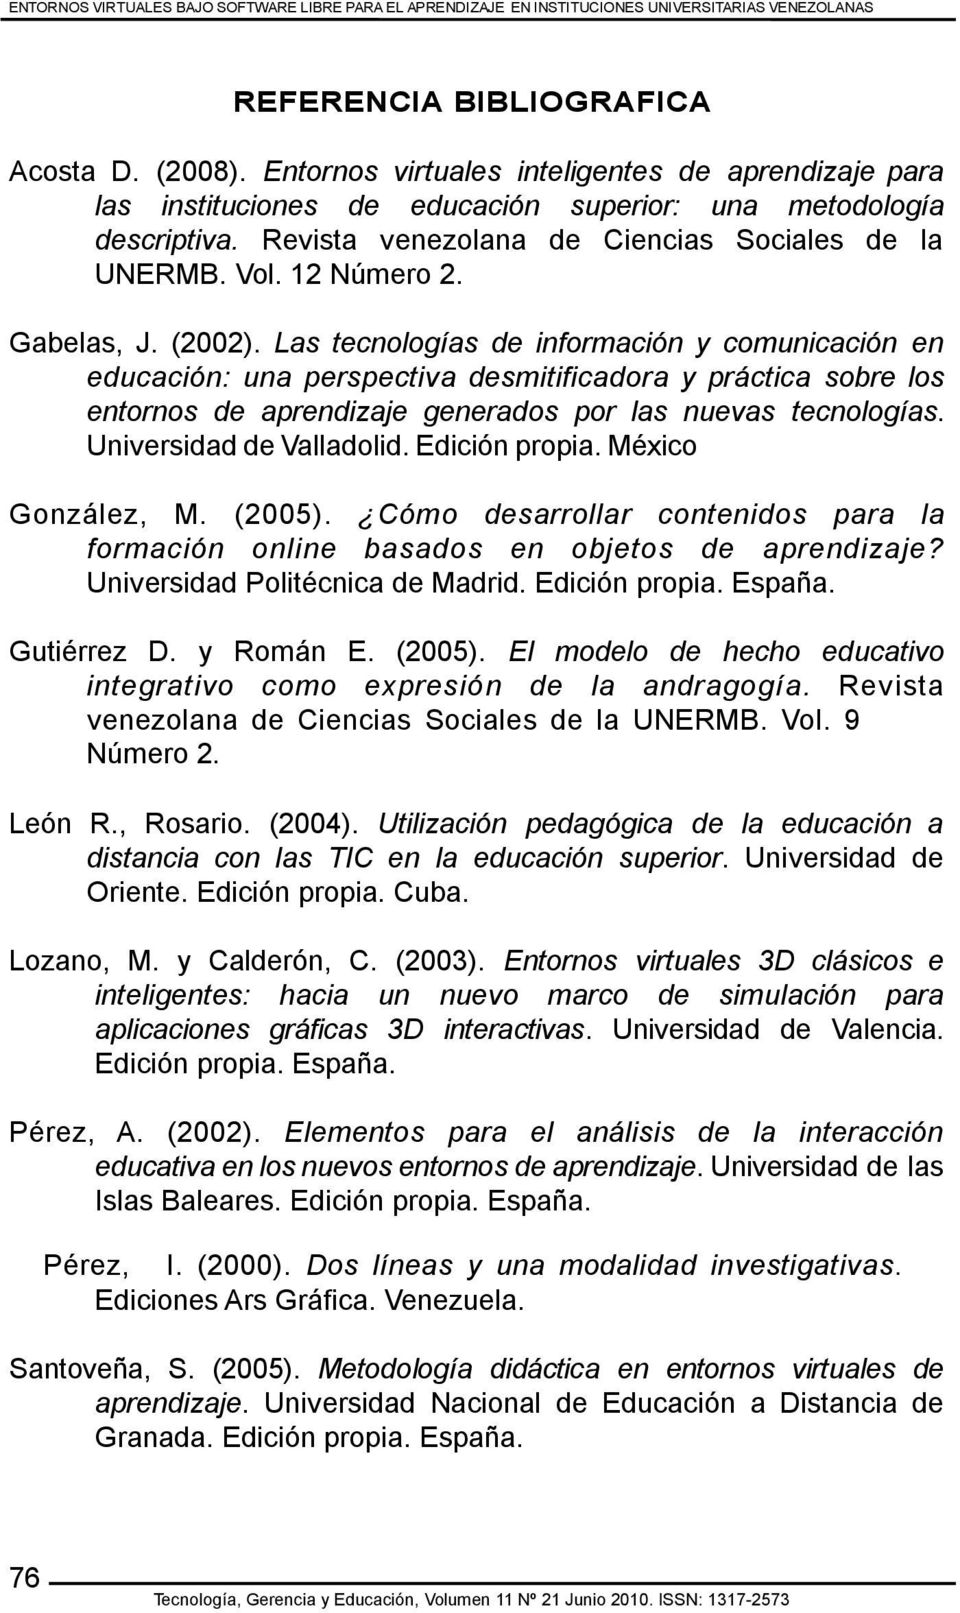 Gabelas, J. (2002). Las tecnologías de información y comunicación en educación: una perspectiva desmitificadora y práctica sobre los entornos de aprendizaje generados por las nuevas tecnologías.